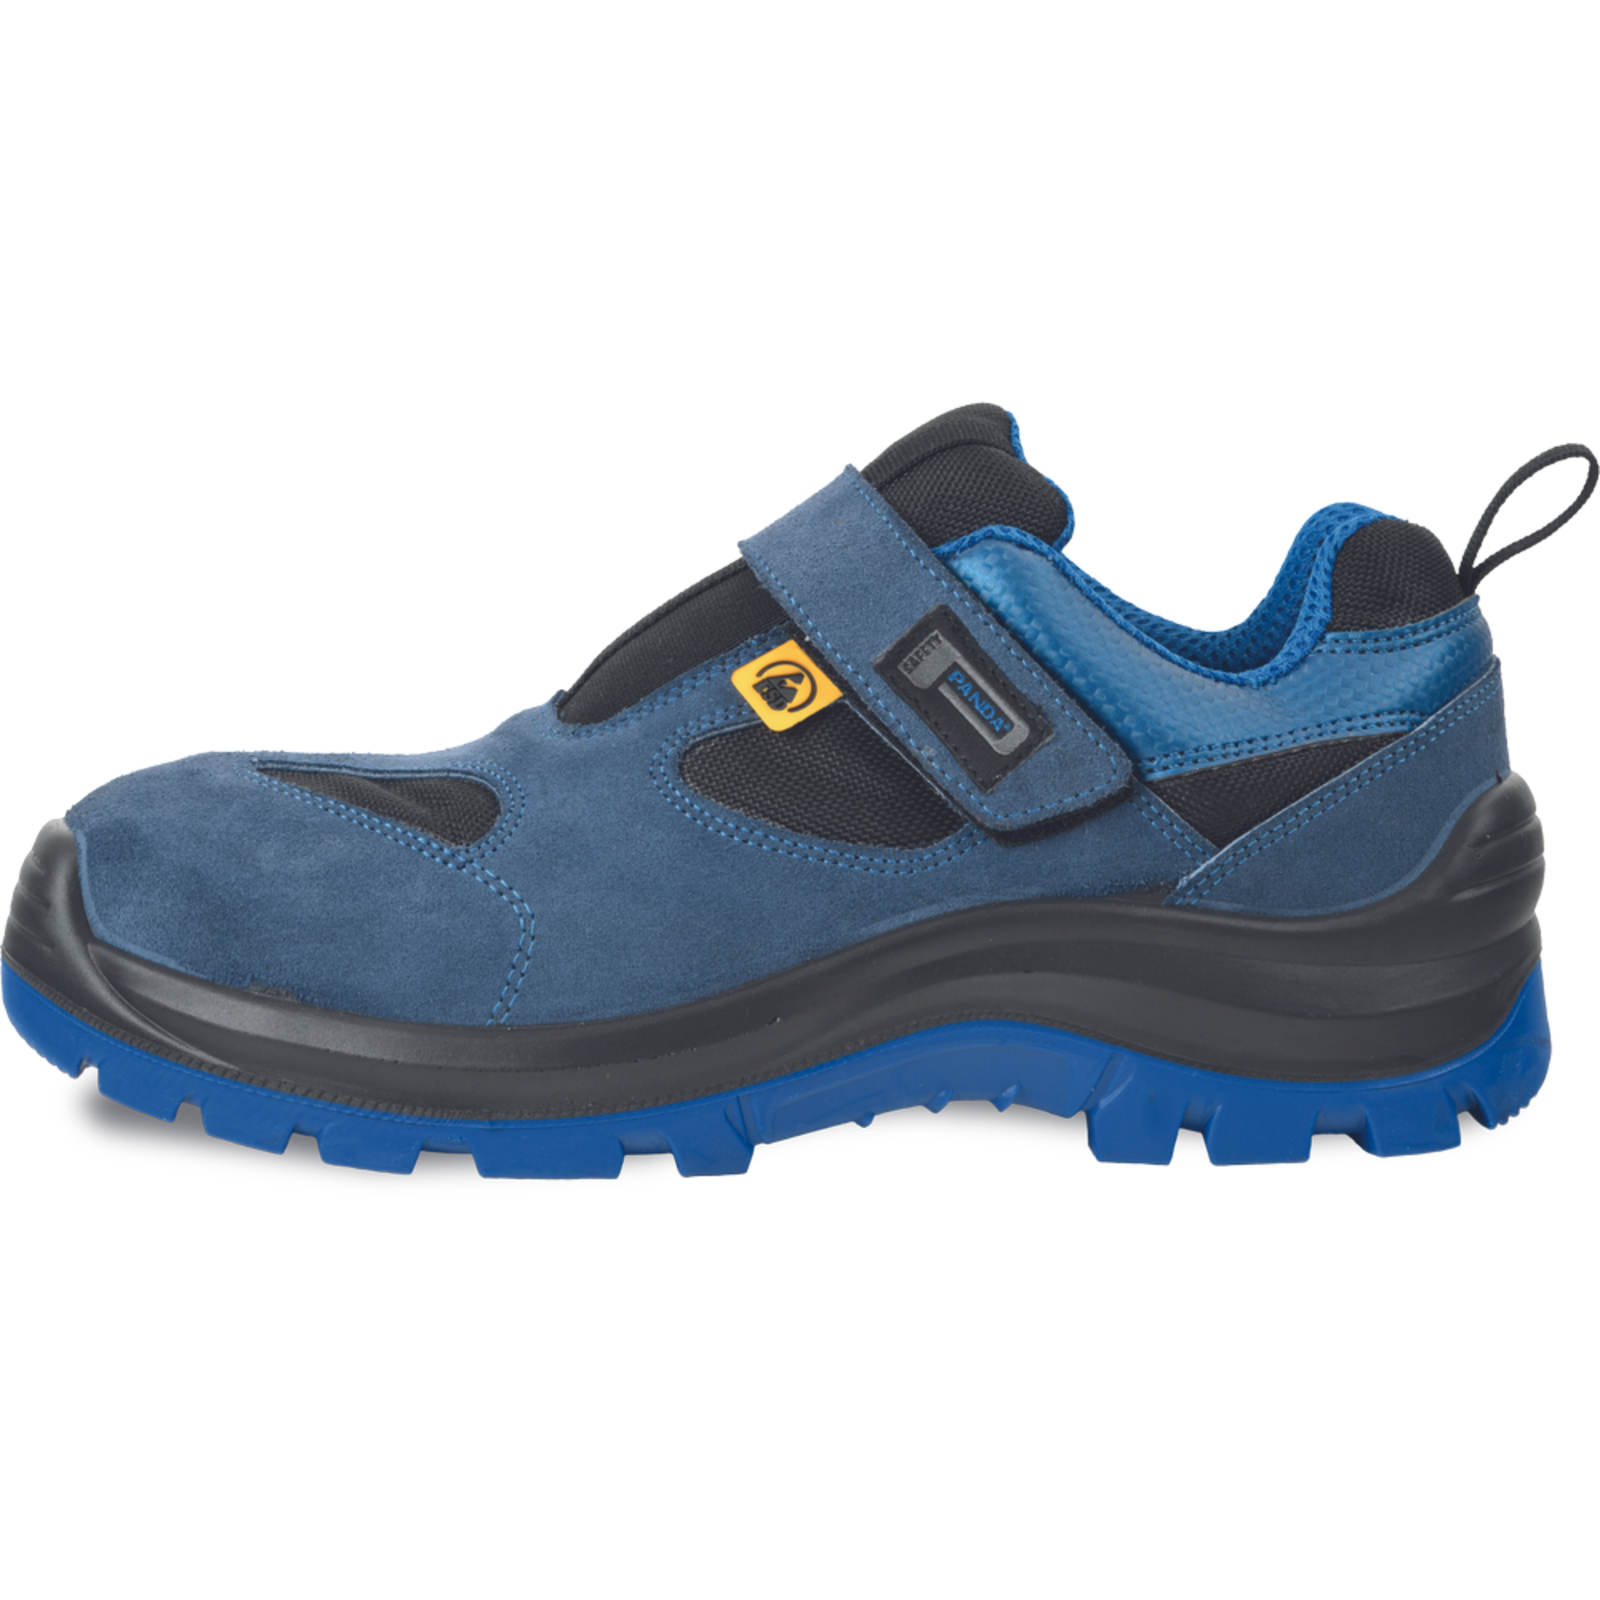 Bezpečnostné pracovné sandále Panda Wilk MF ESD S1P SRC - veľkosť: 44, farba: modrá/čierna